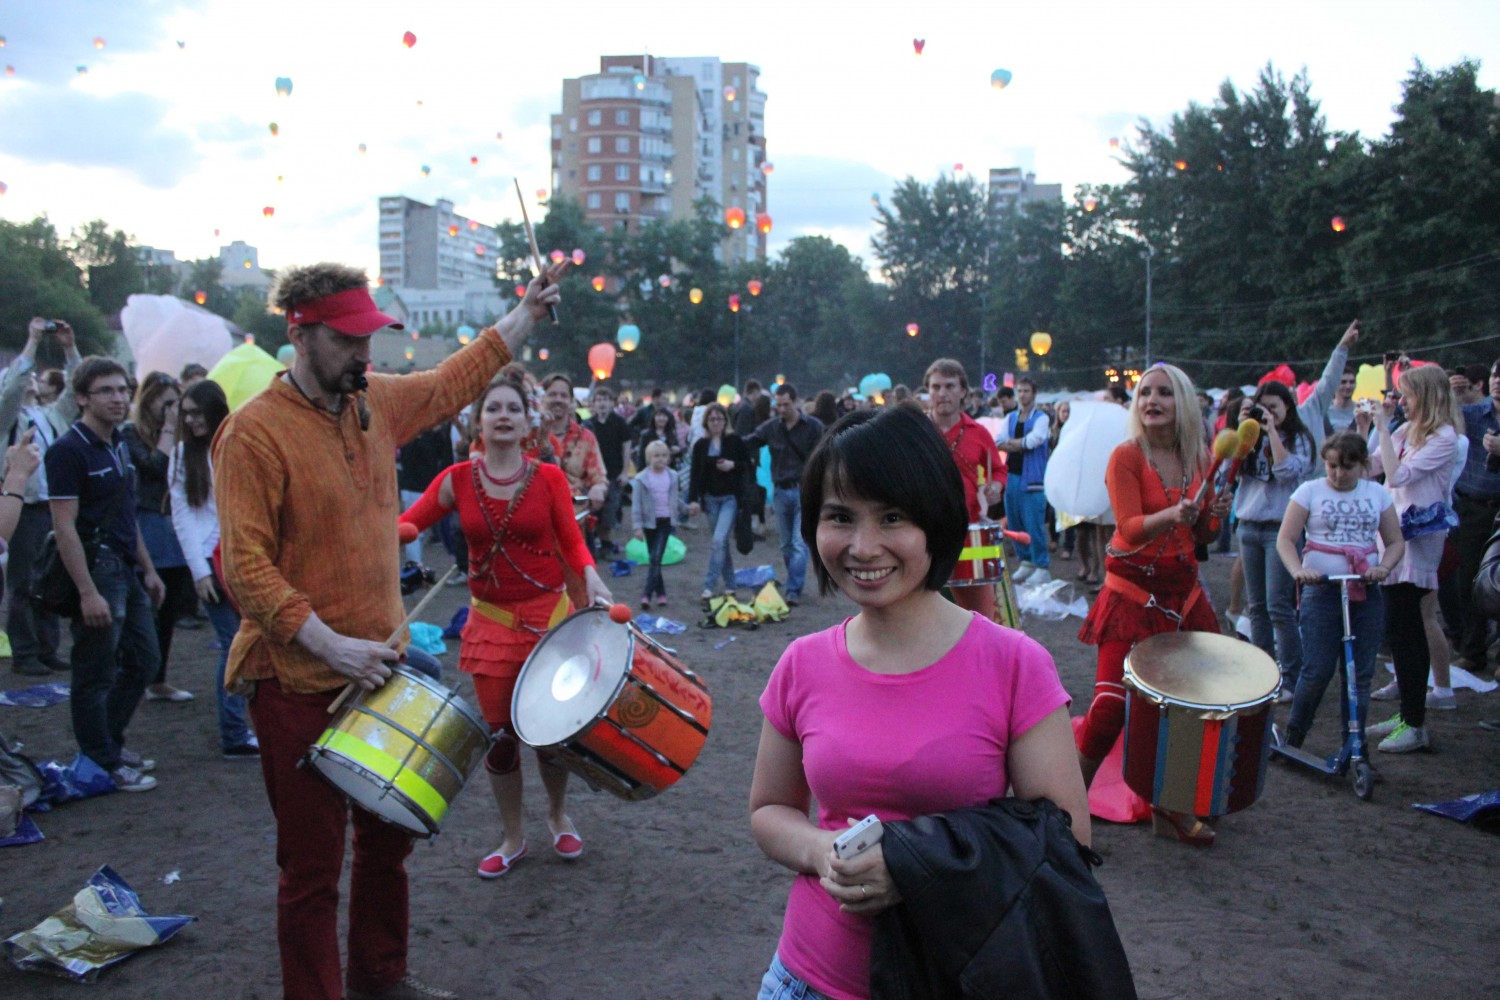 Lung linh lễ hội thả đèn trời tại Moscow, Nga